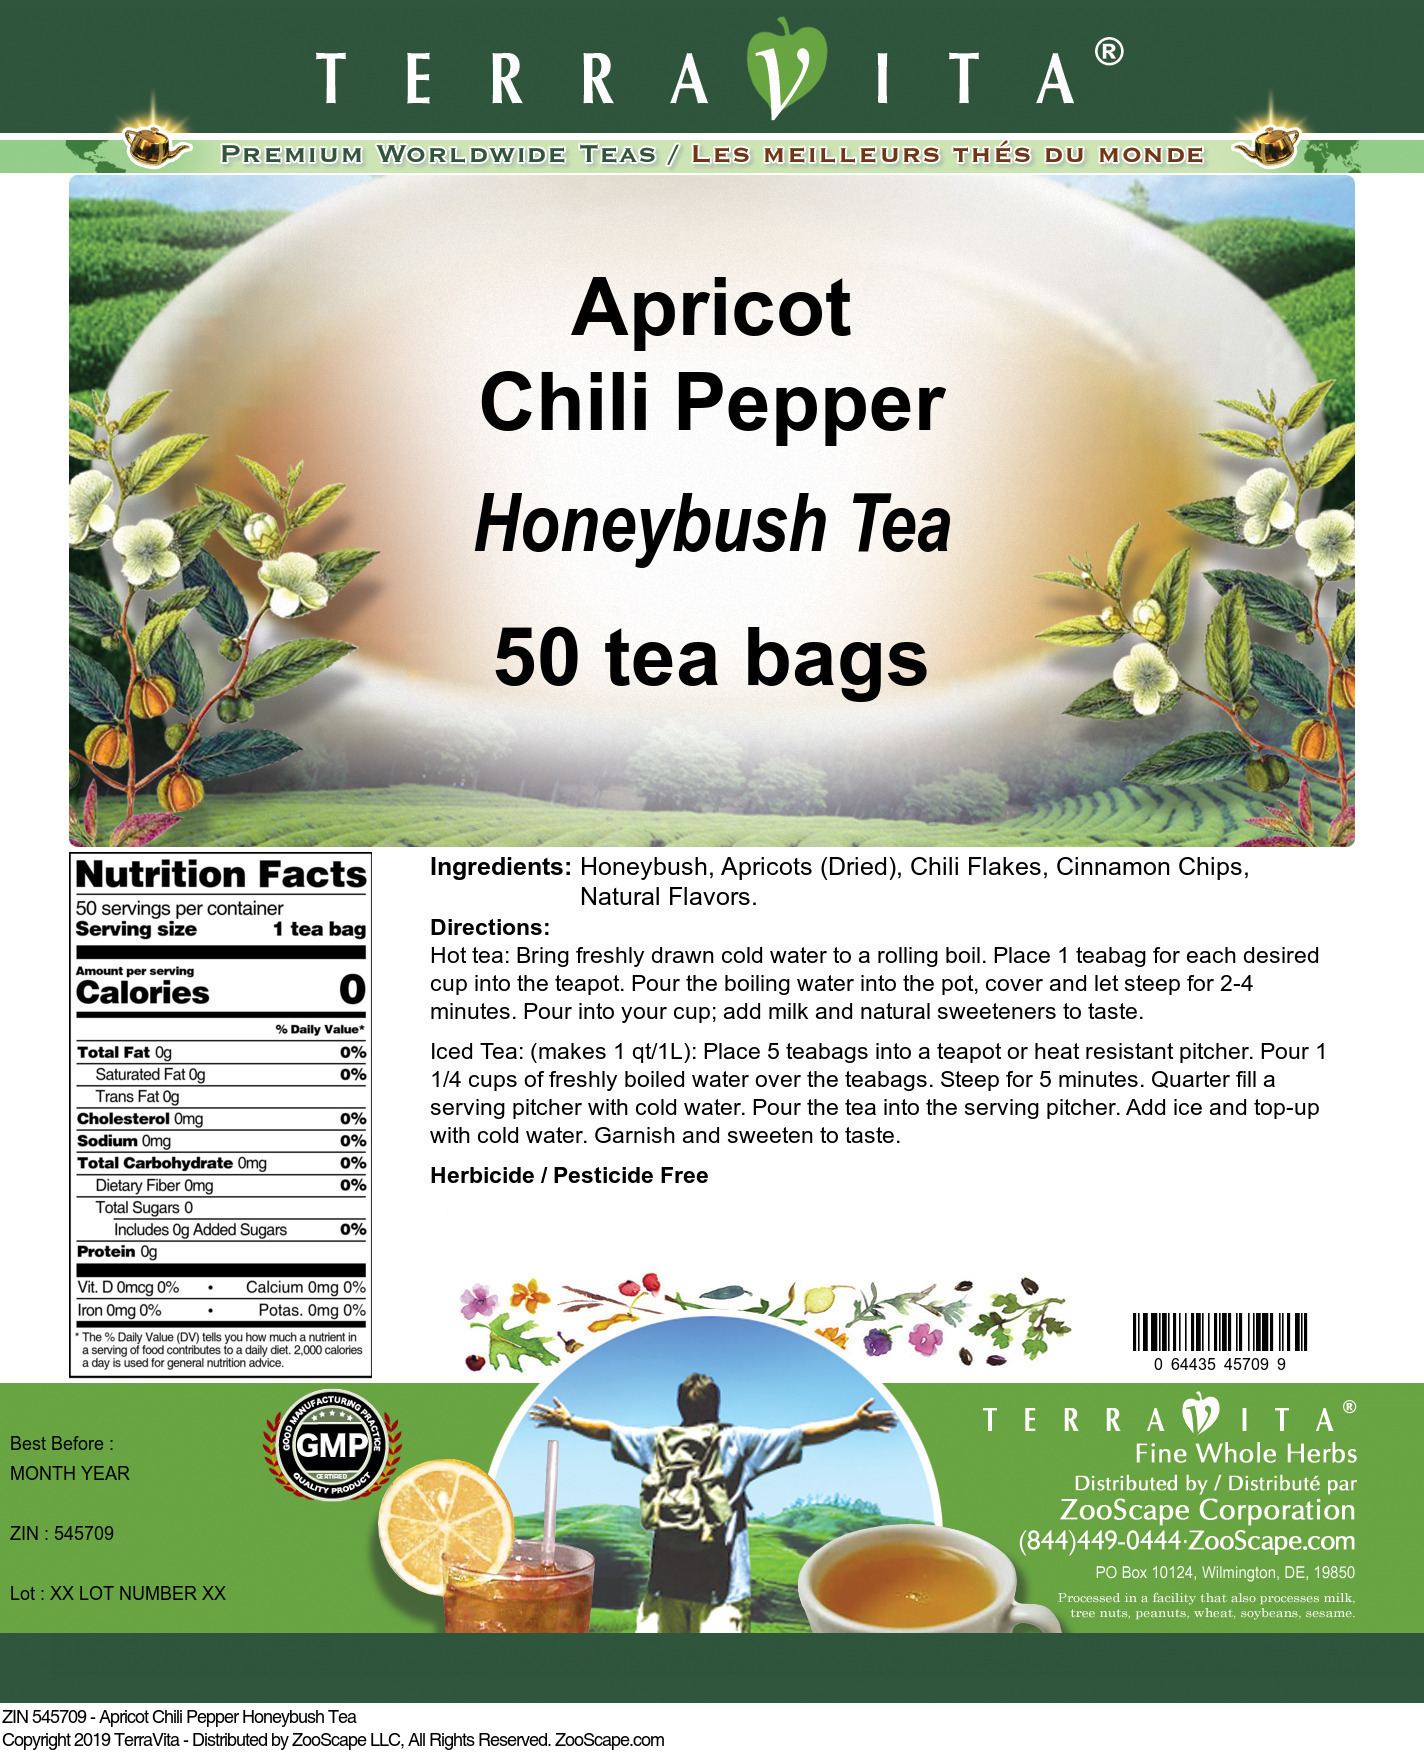 Apricot Chili Pepper Honeybush Tea - Label